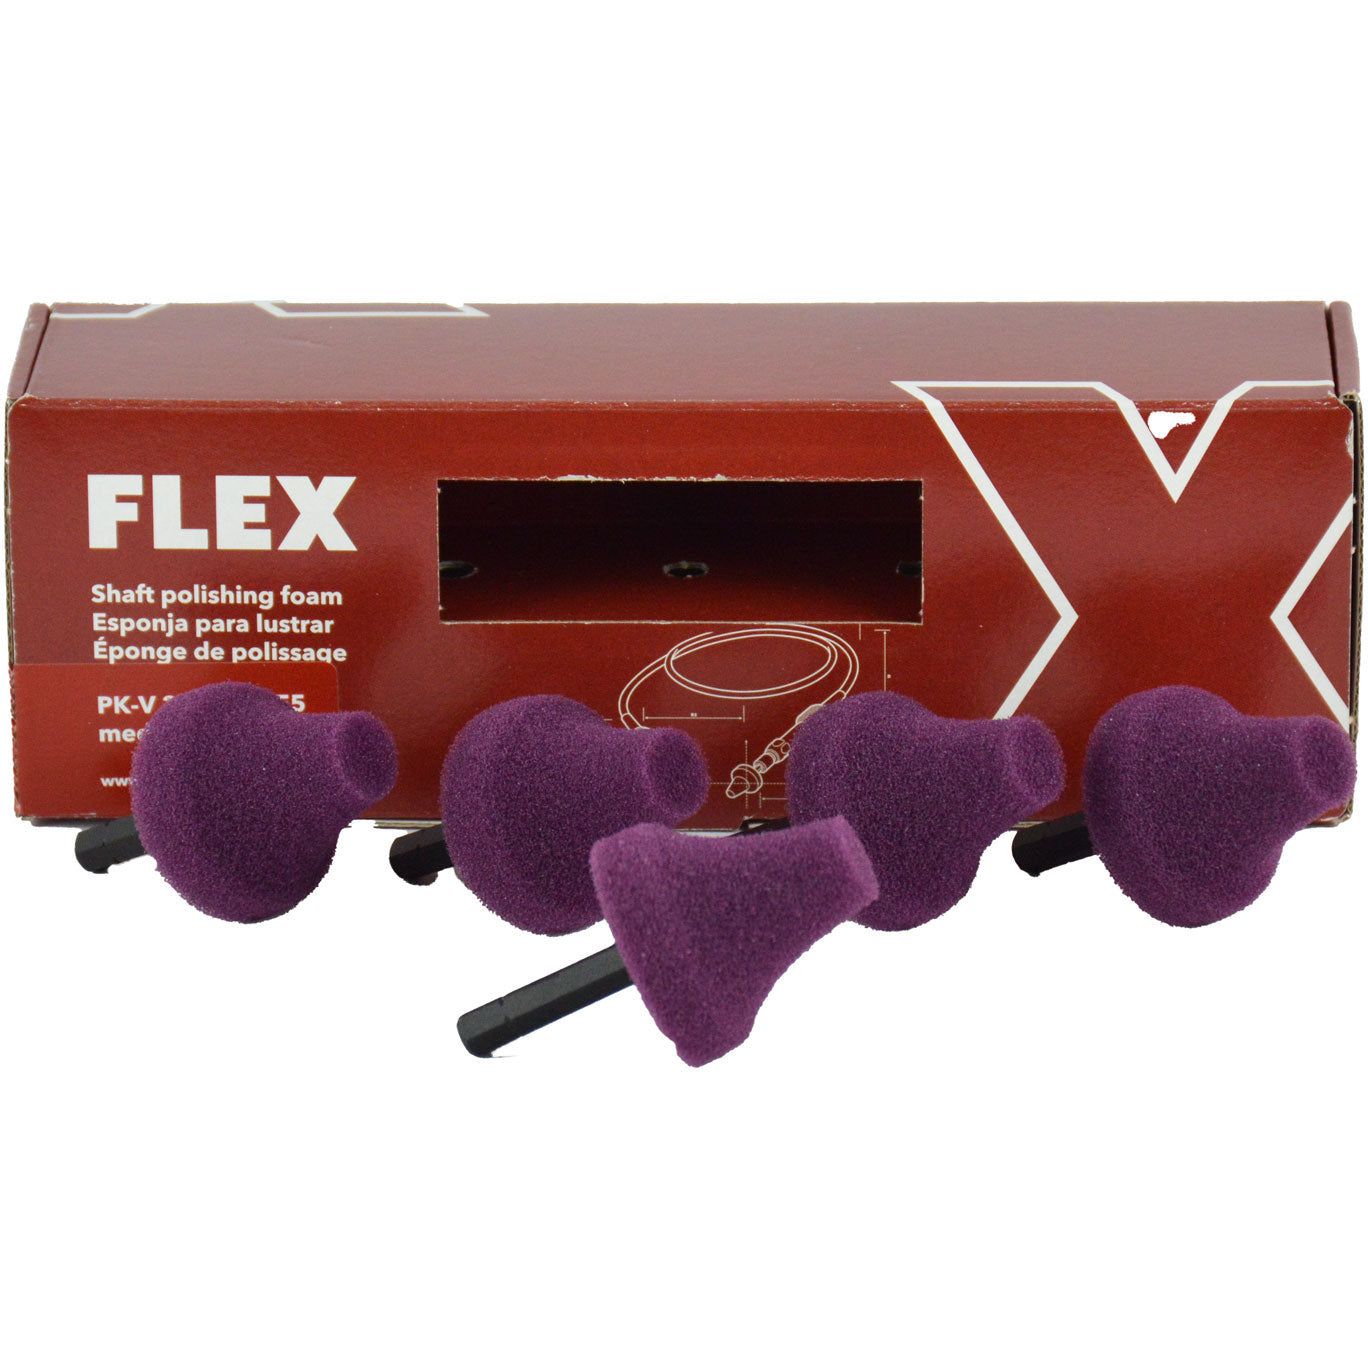 FLEX XFE 7-12 3 Inch Mini Polisher Kit 